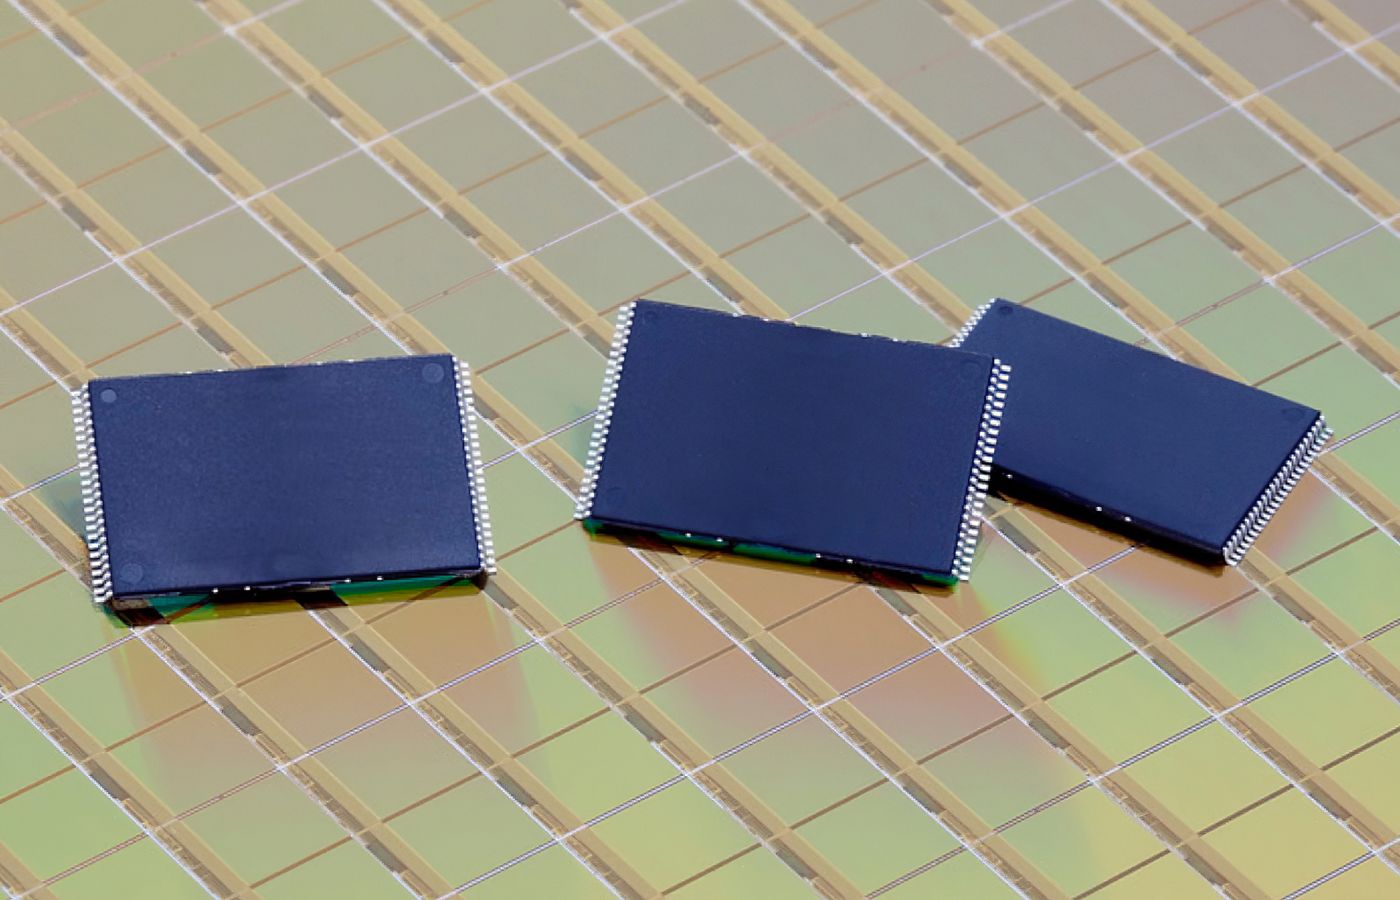 NEO Semiconductor récompensé pour sa norme X-NAND qui va révolutionner perfs et prix des SSD